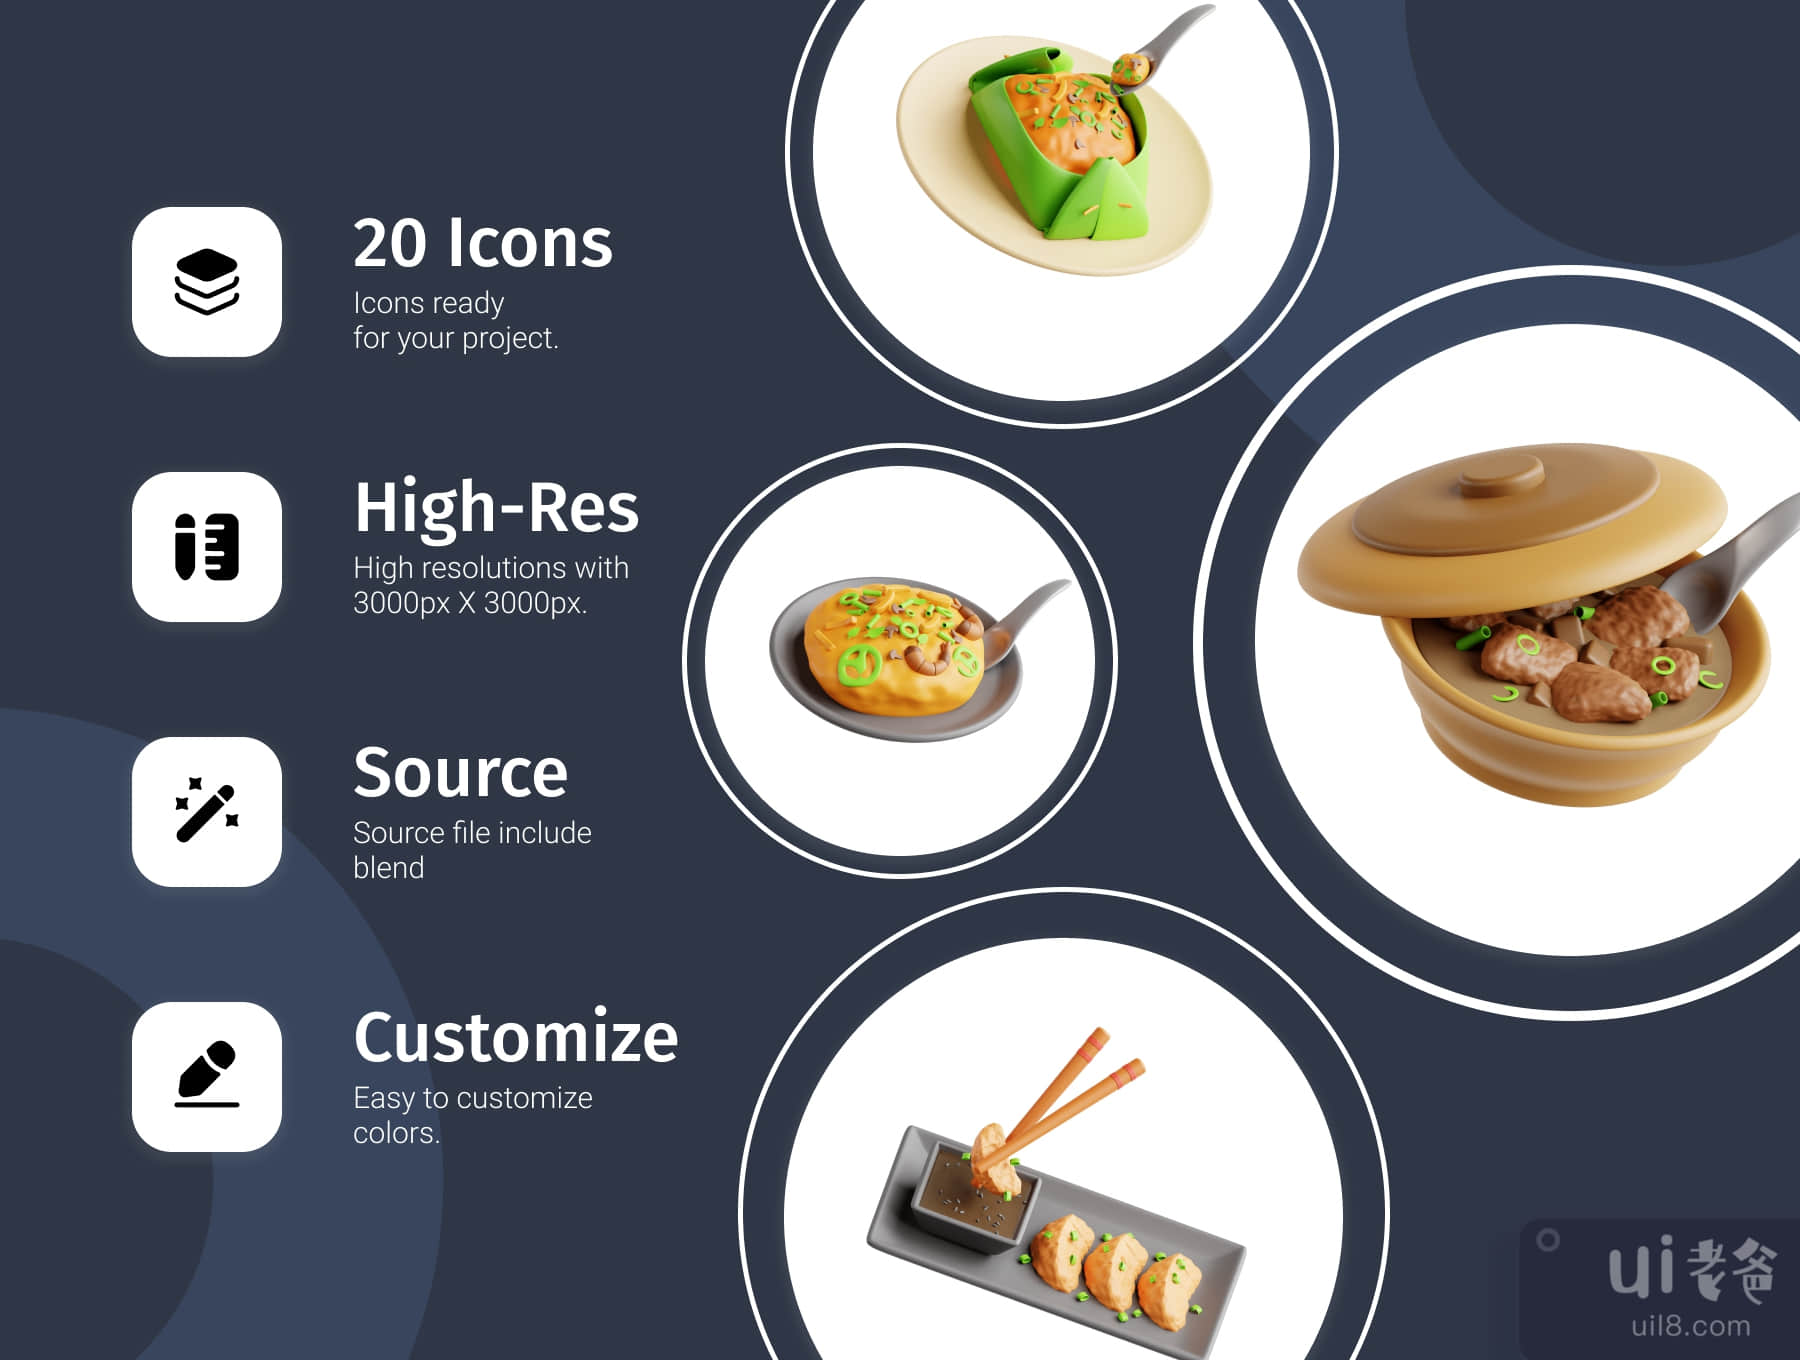 三维亚洲食品 (3D Asian Food)插图1